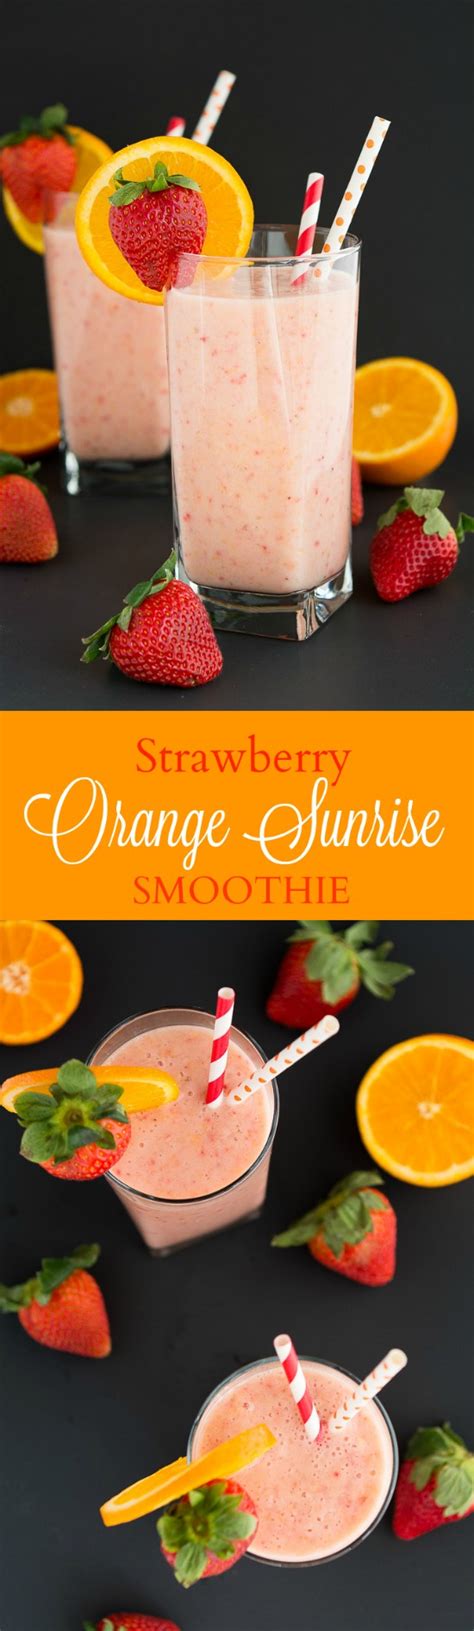 Strawberry Orange Sunrise Smoothie Garnish And Glaze